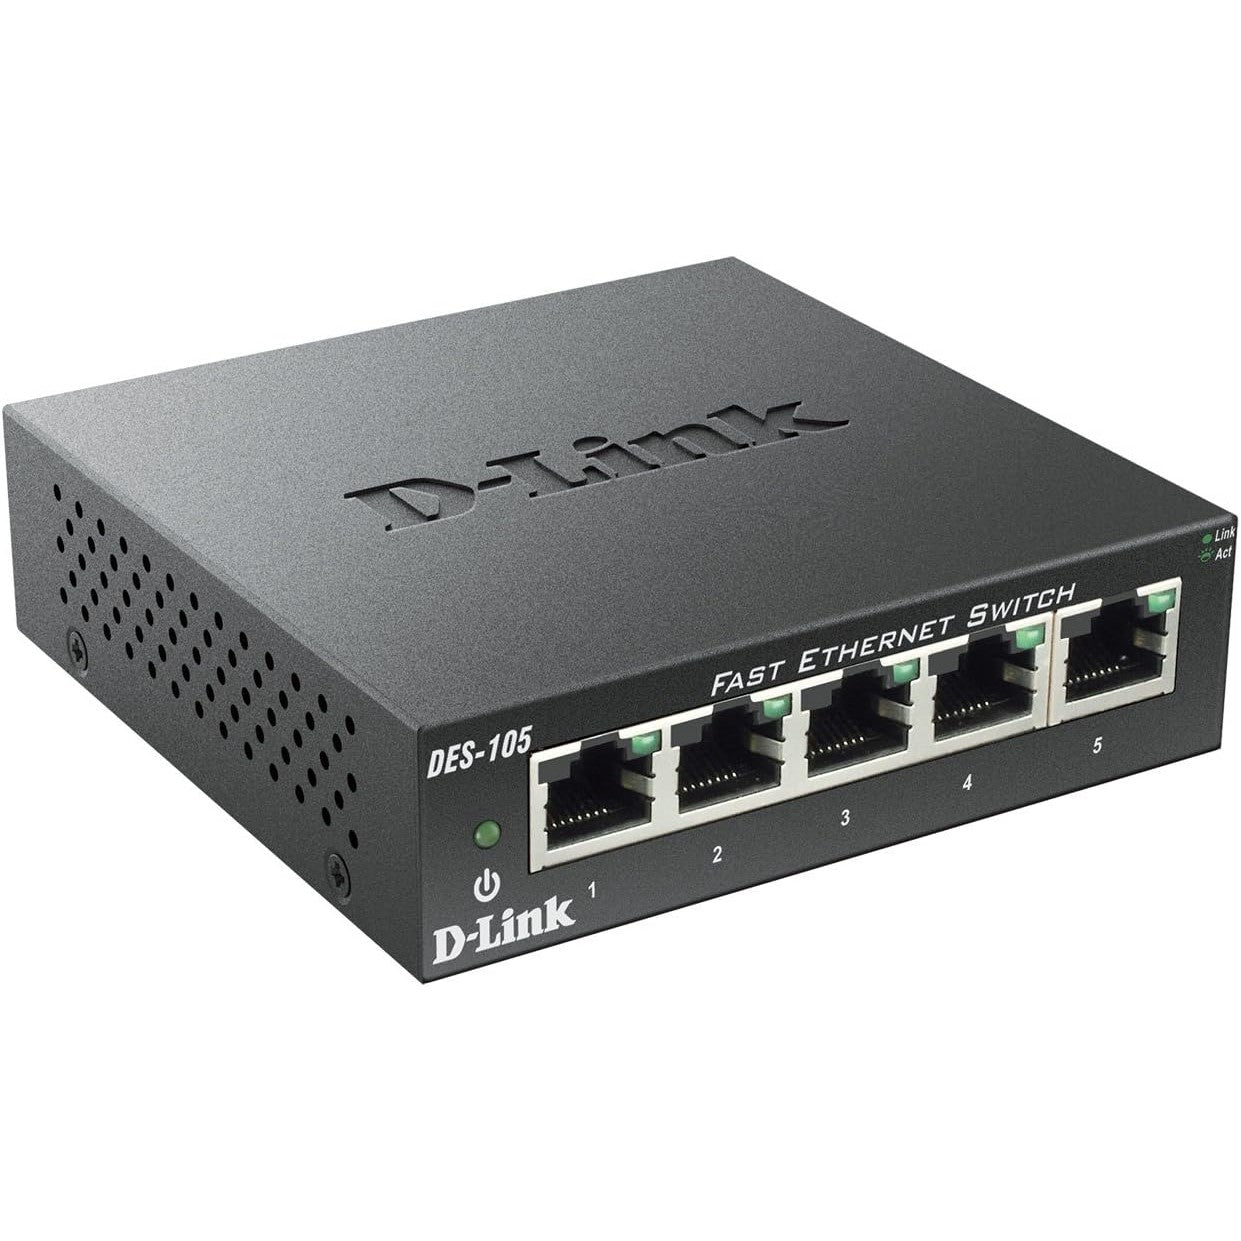 D-Link DES-105 5-Port Fast Ethernet Switch